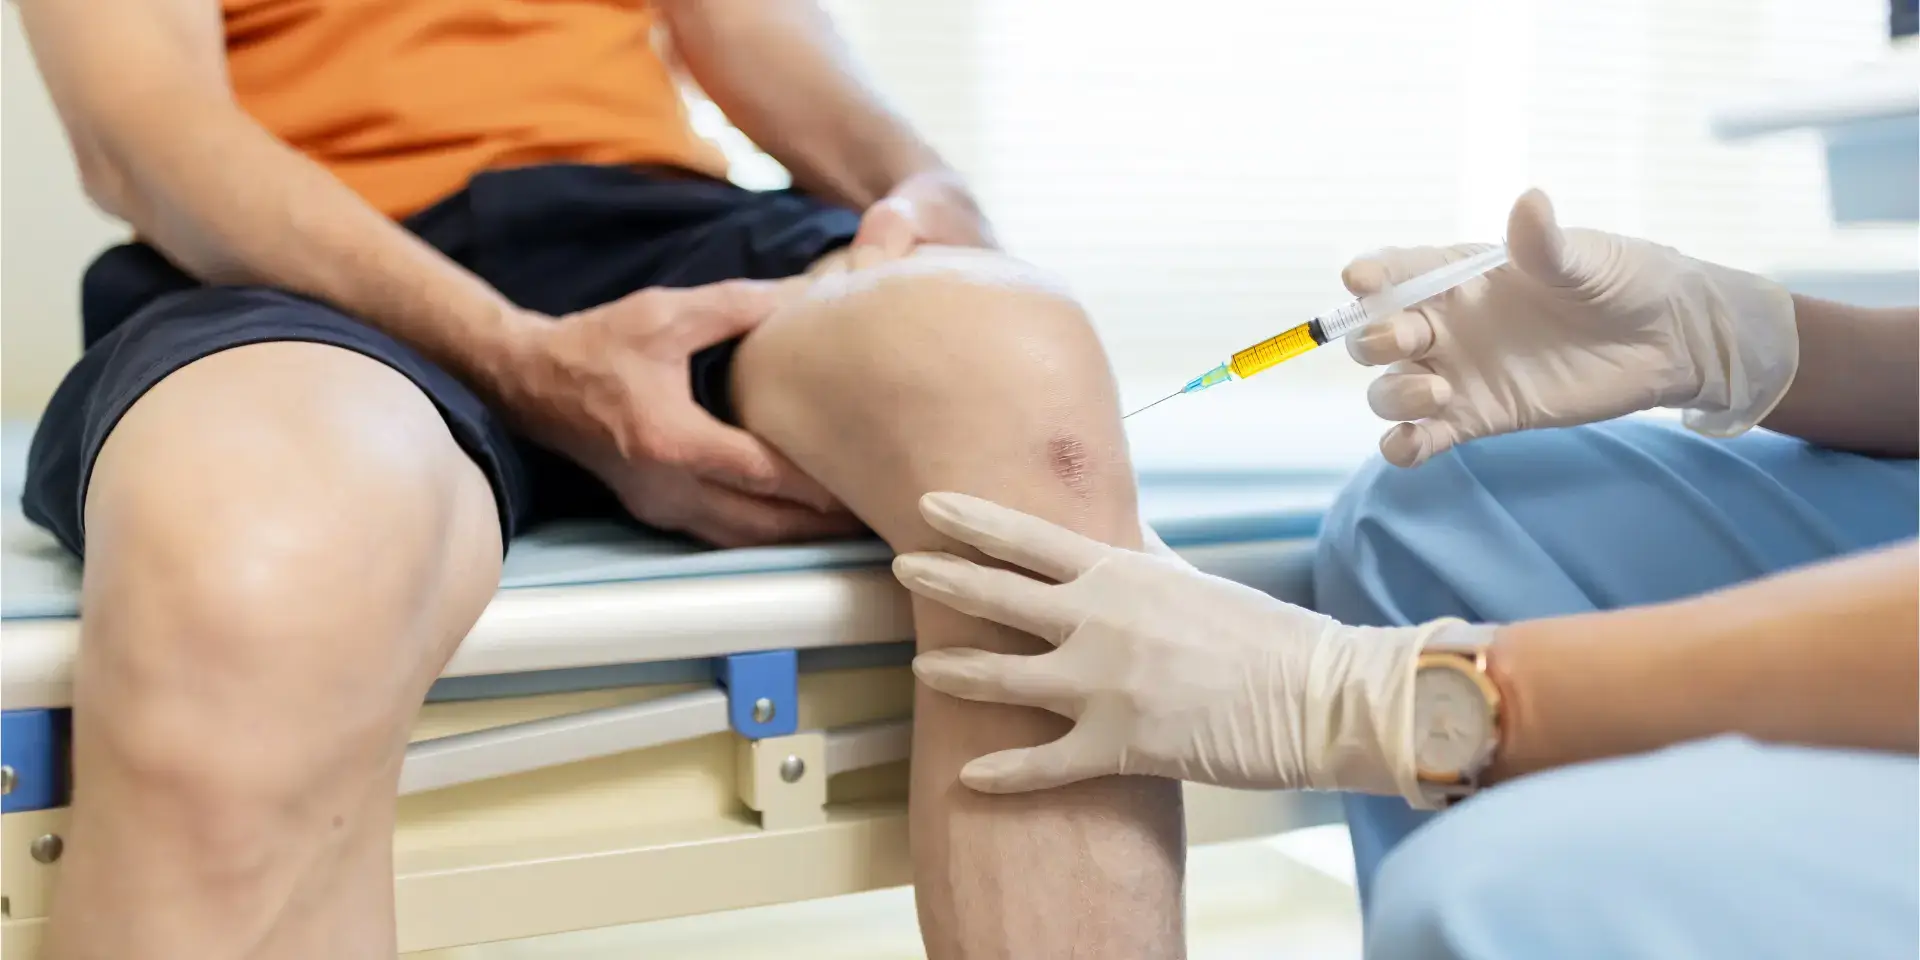 Proceso de inyección de PRP en la articulación de la rodilla por un médico experto.